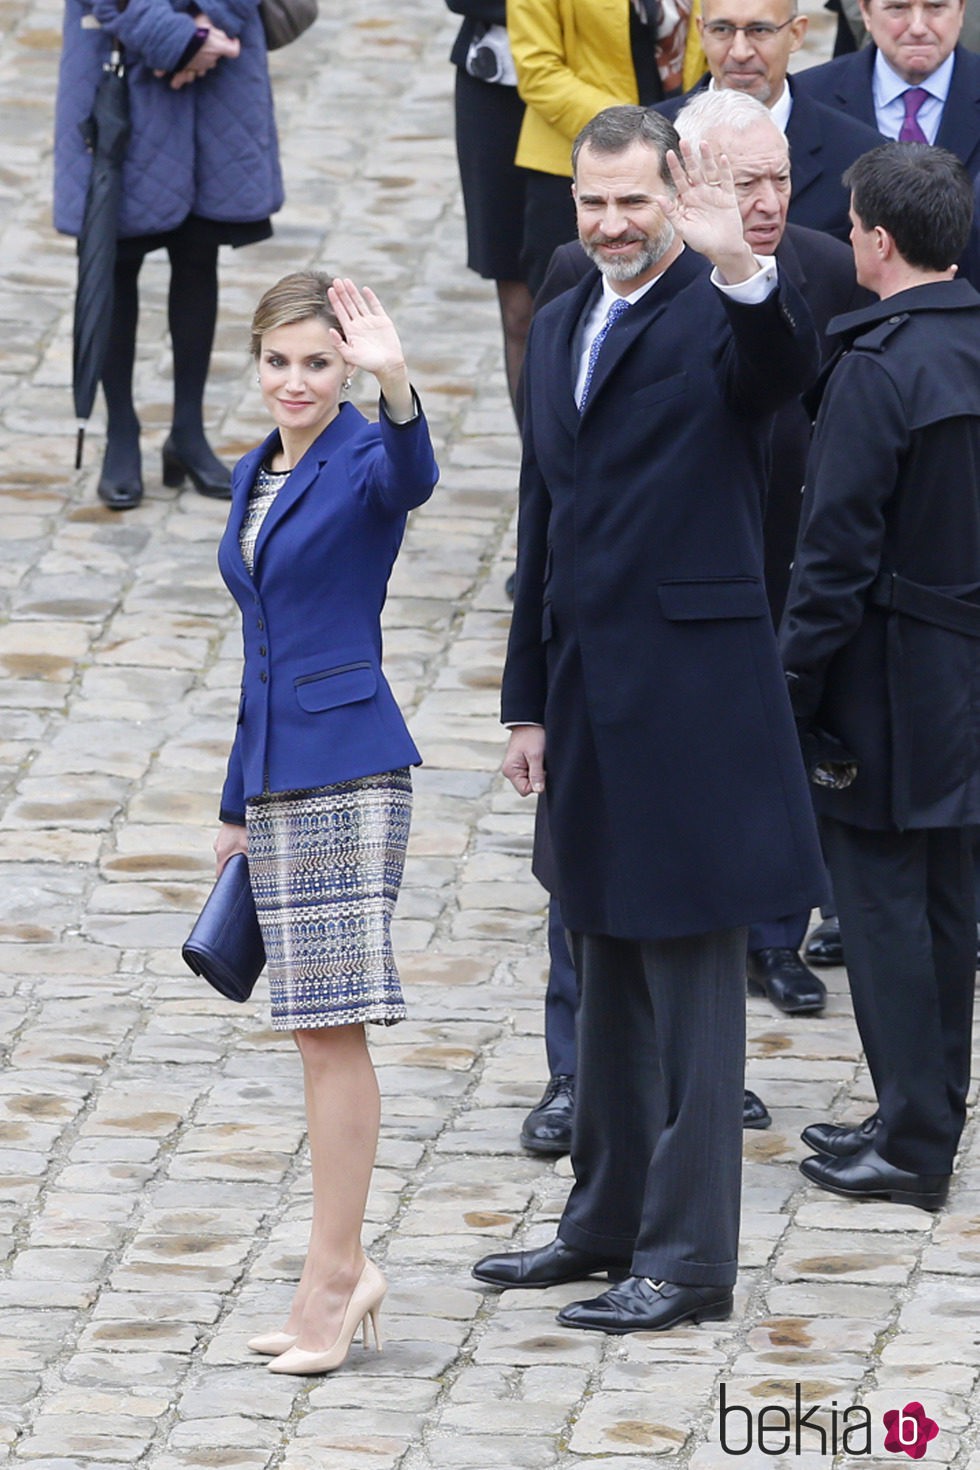 Los Reyes Felipe y Letizia en su primer Viaje de Estado a Francia como Reyes de España